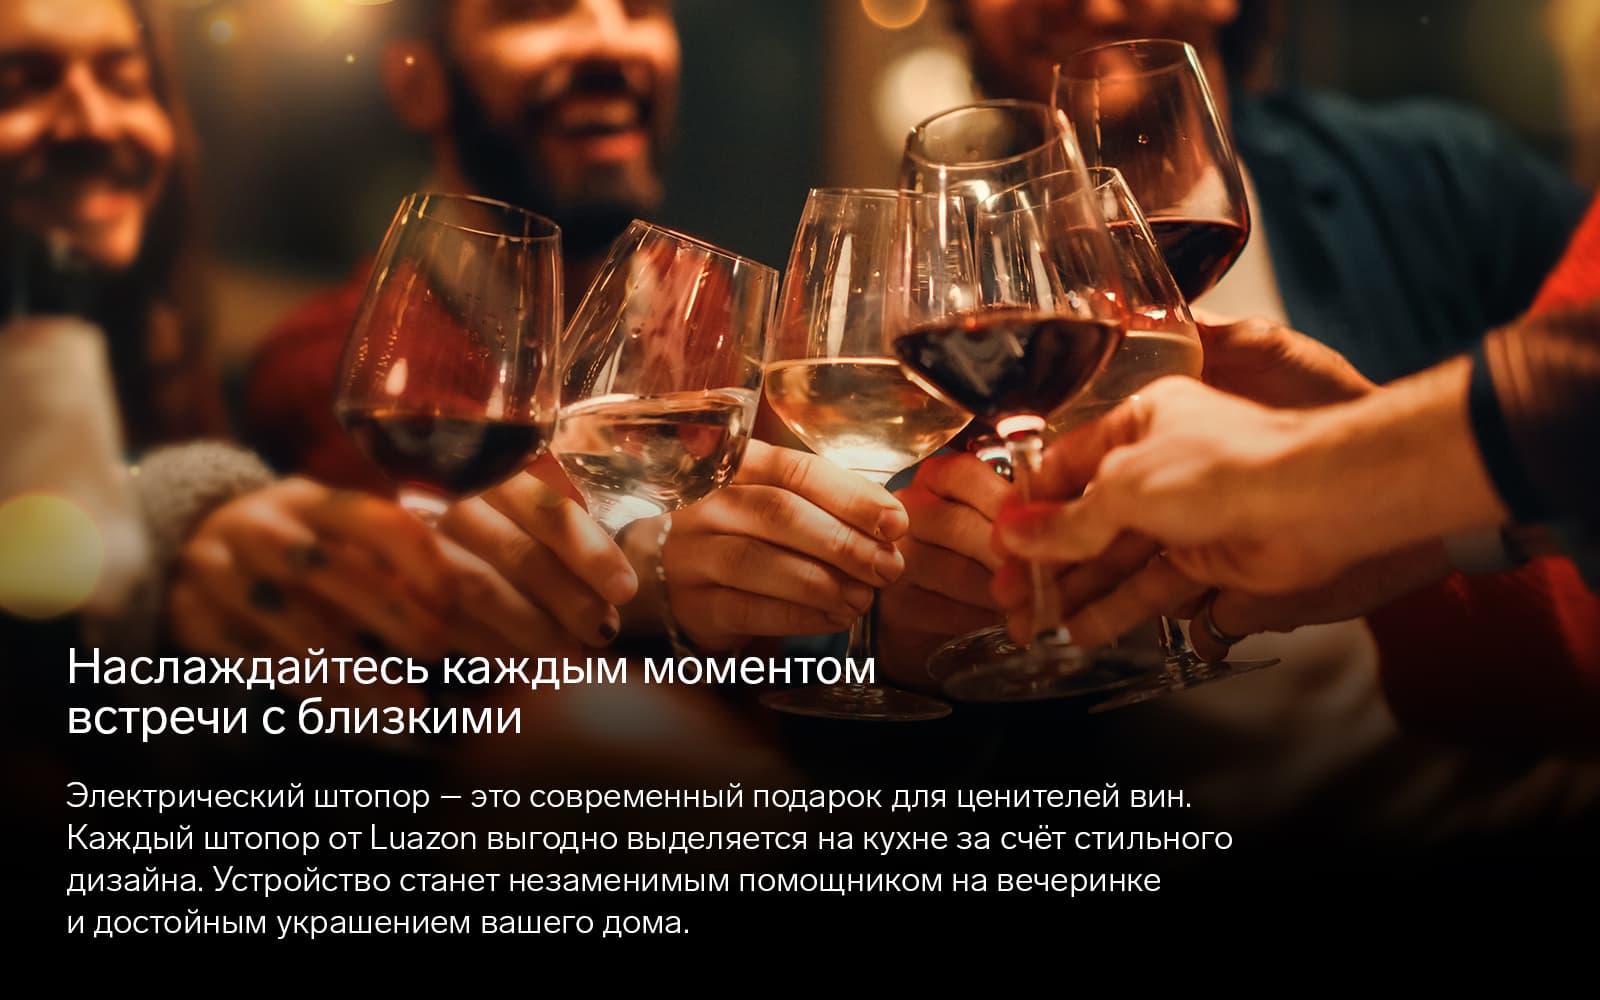 Набор сомелье - современный и стильный подарок для ценителей вин.